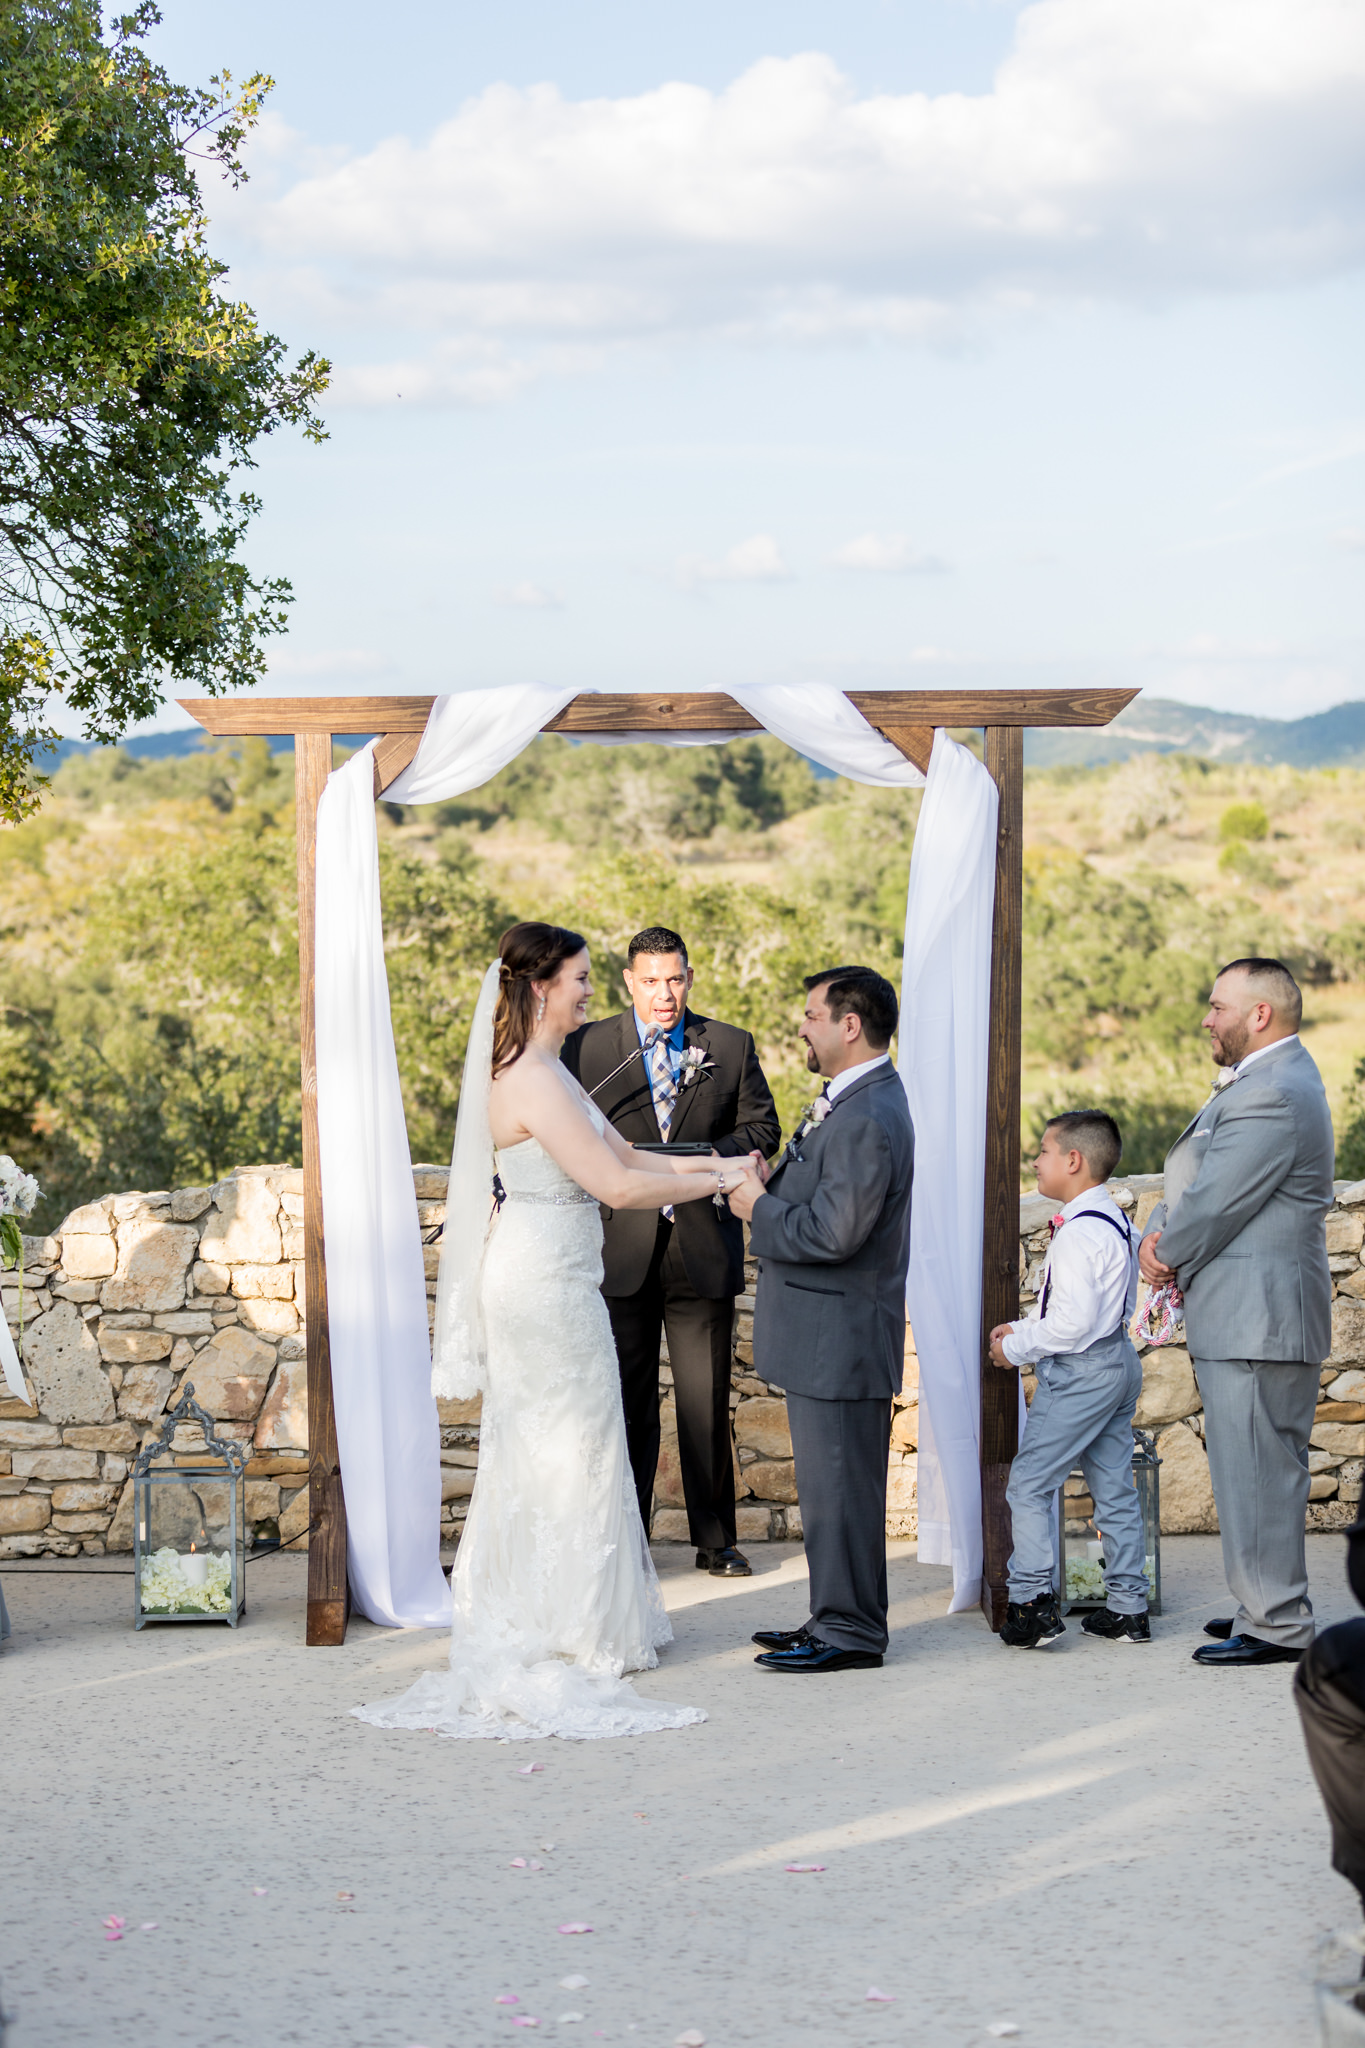 A Grey and Blush Autumn Wedding at Paniolo Ranch in Boerne, TX by Dawn Elizabeth Studios, San Antonio Wedding Photographer